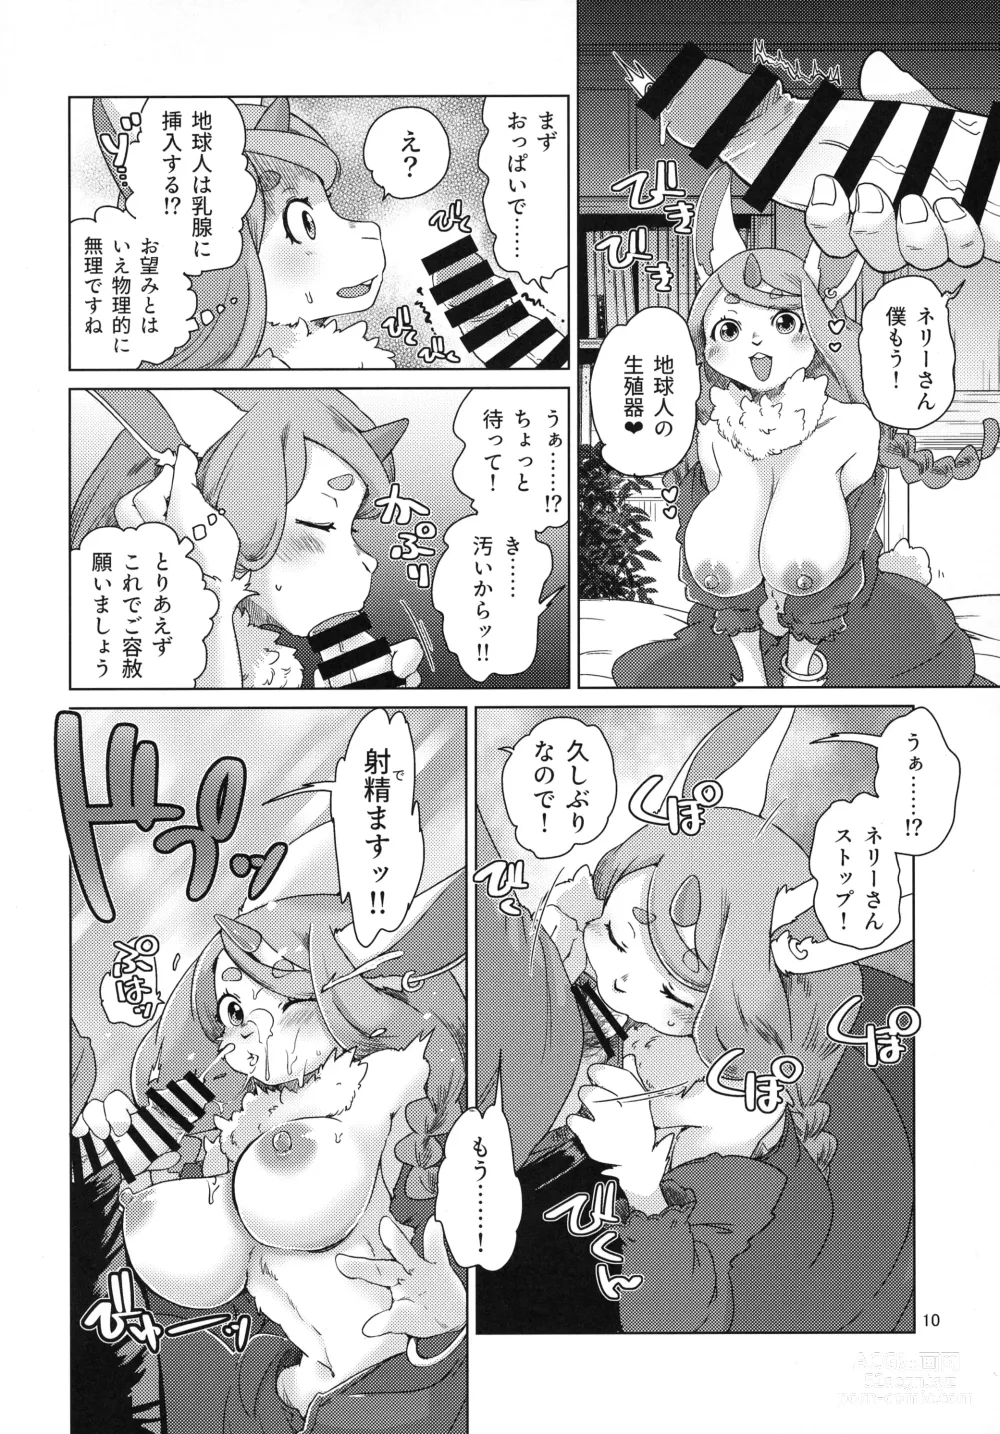 Page 10 of doujinshi Mofumofu Invasion